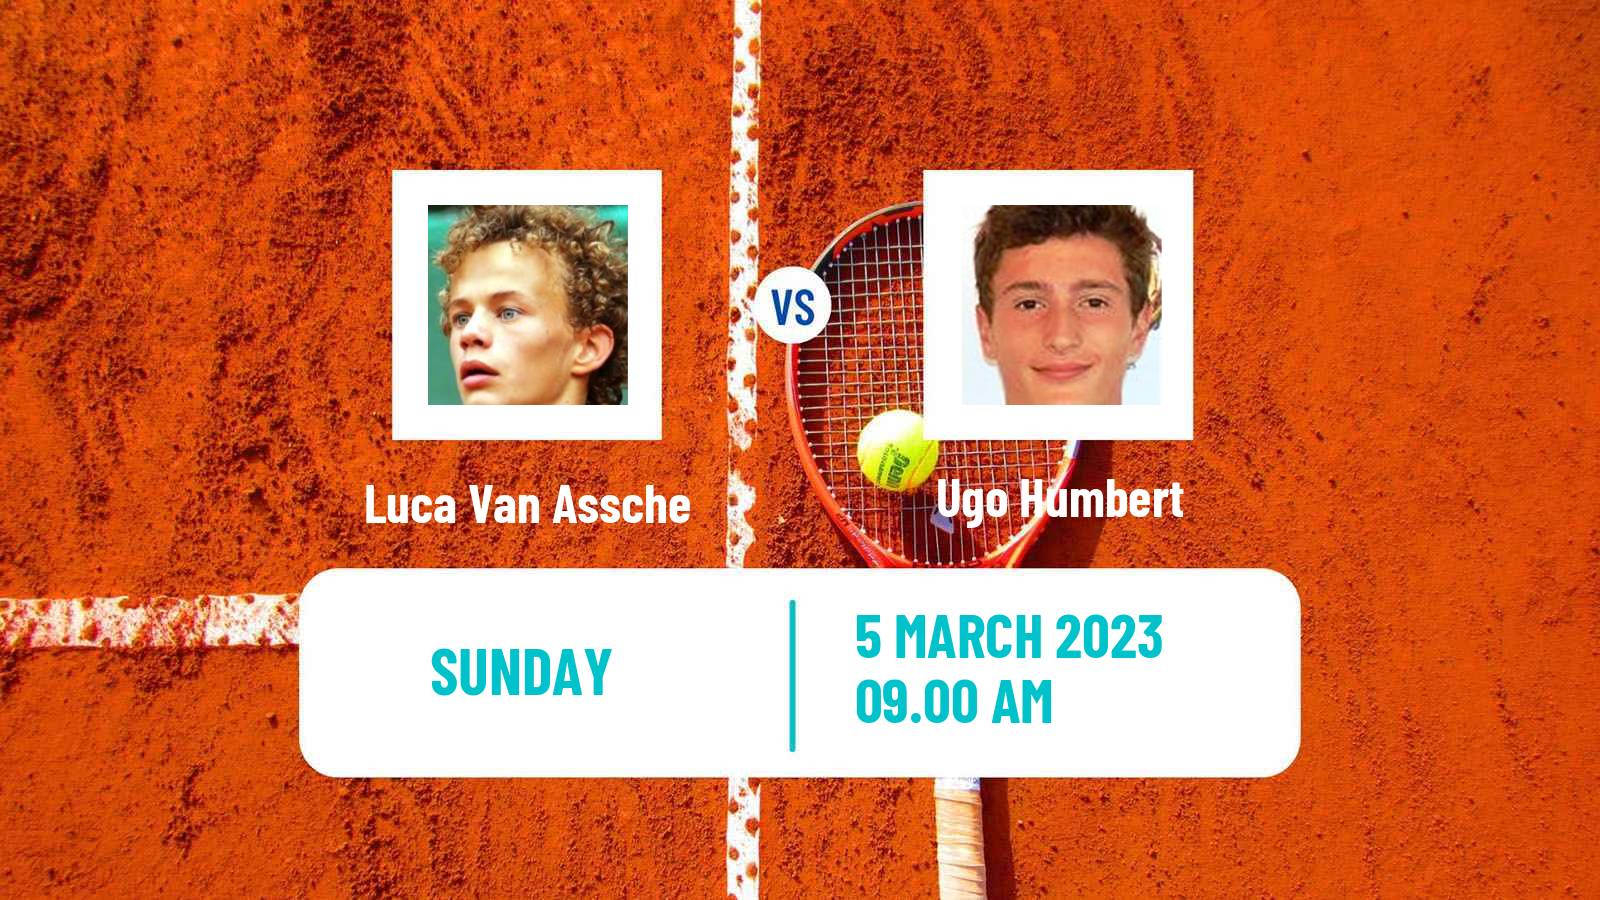 Tennis ATP Challenger Luca Van Assche - Ugo Humbert